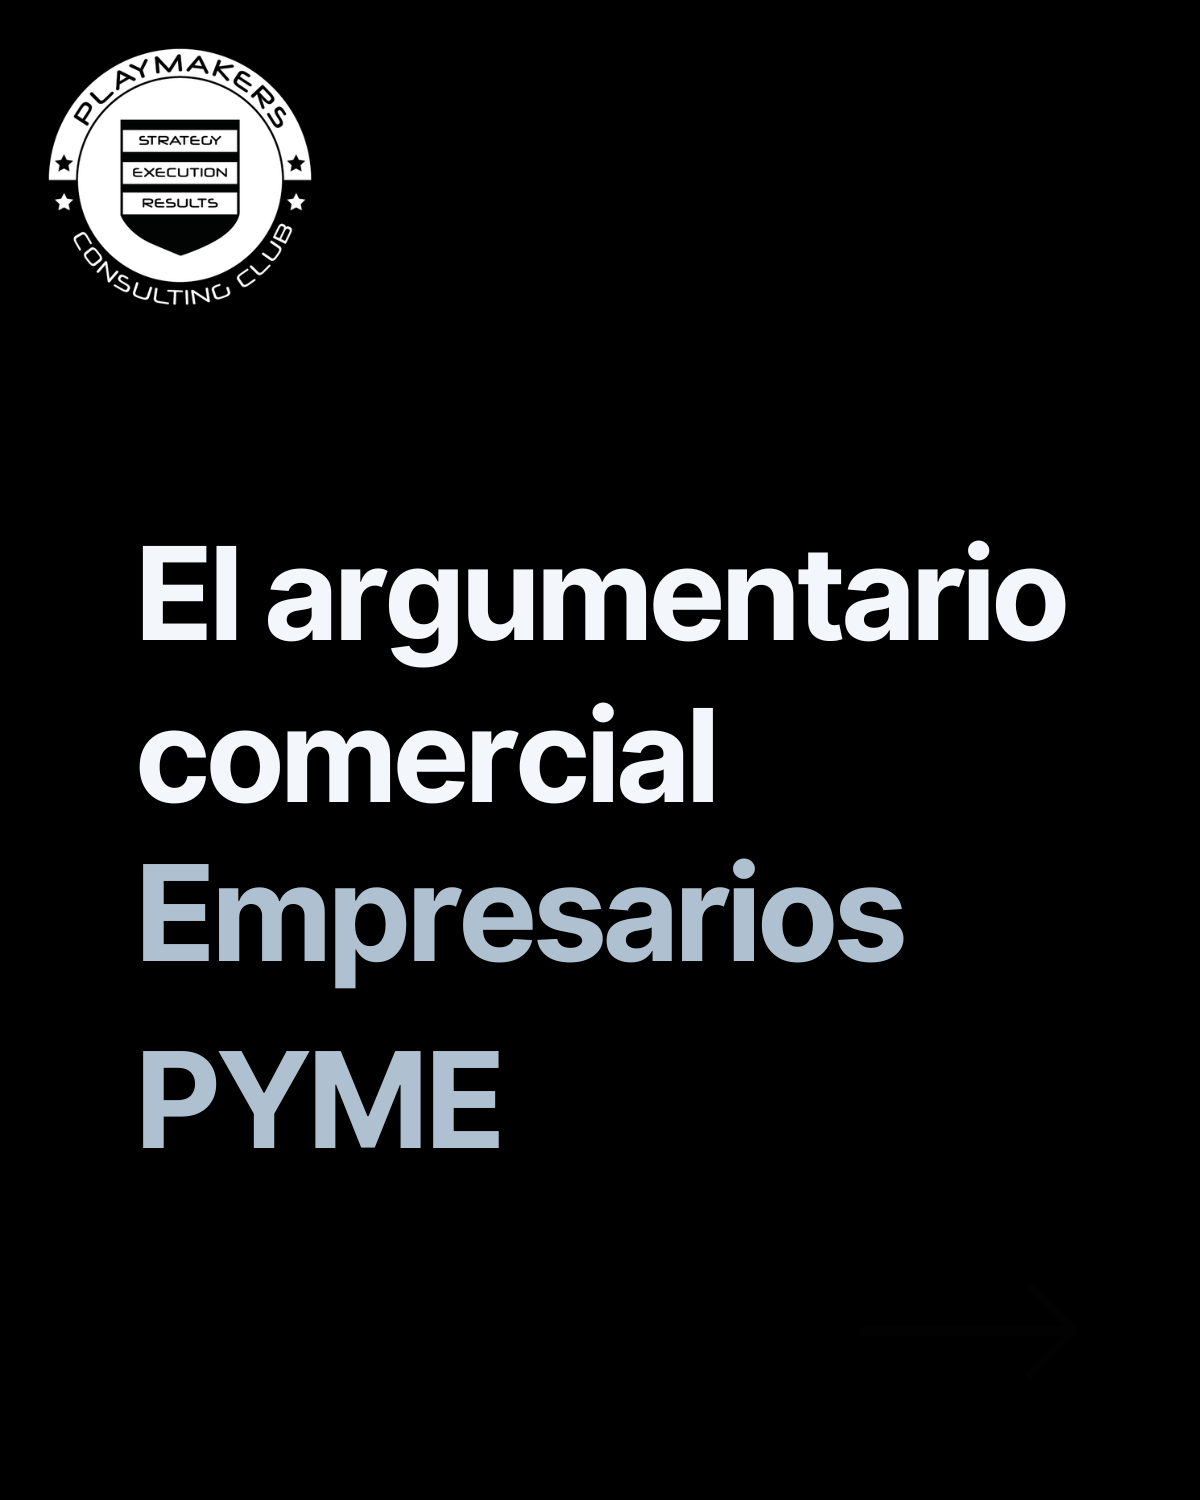 Argumentario comercial para empresarios pyme en España